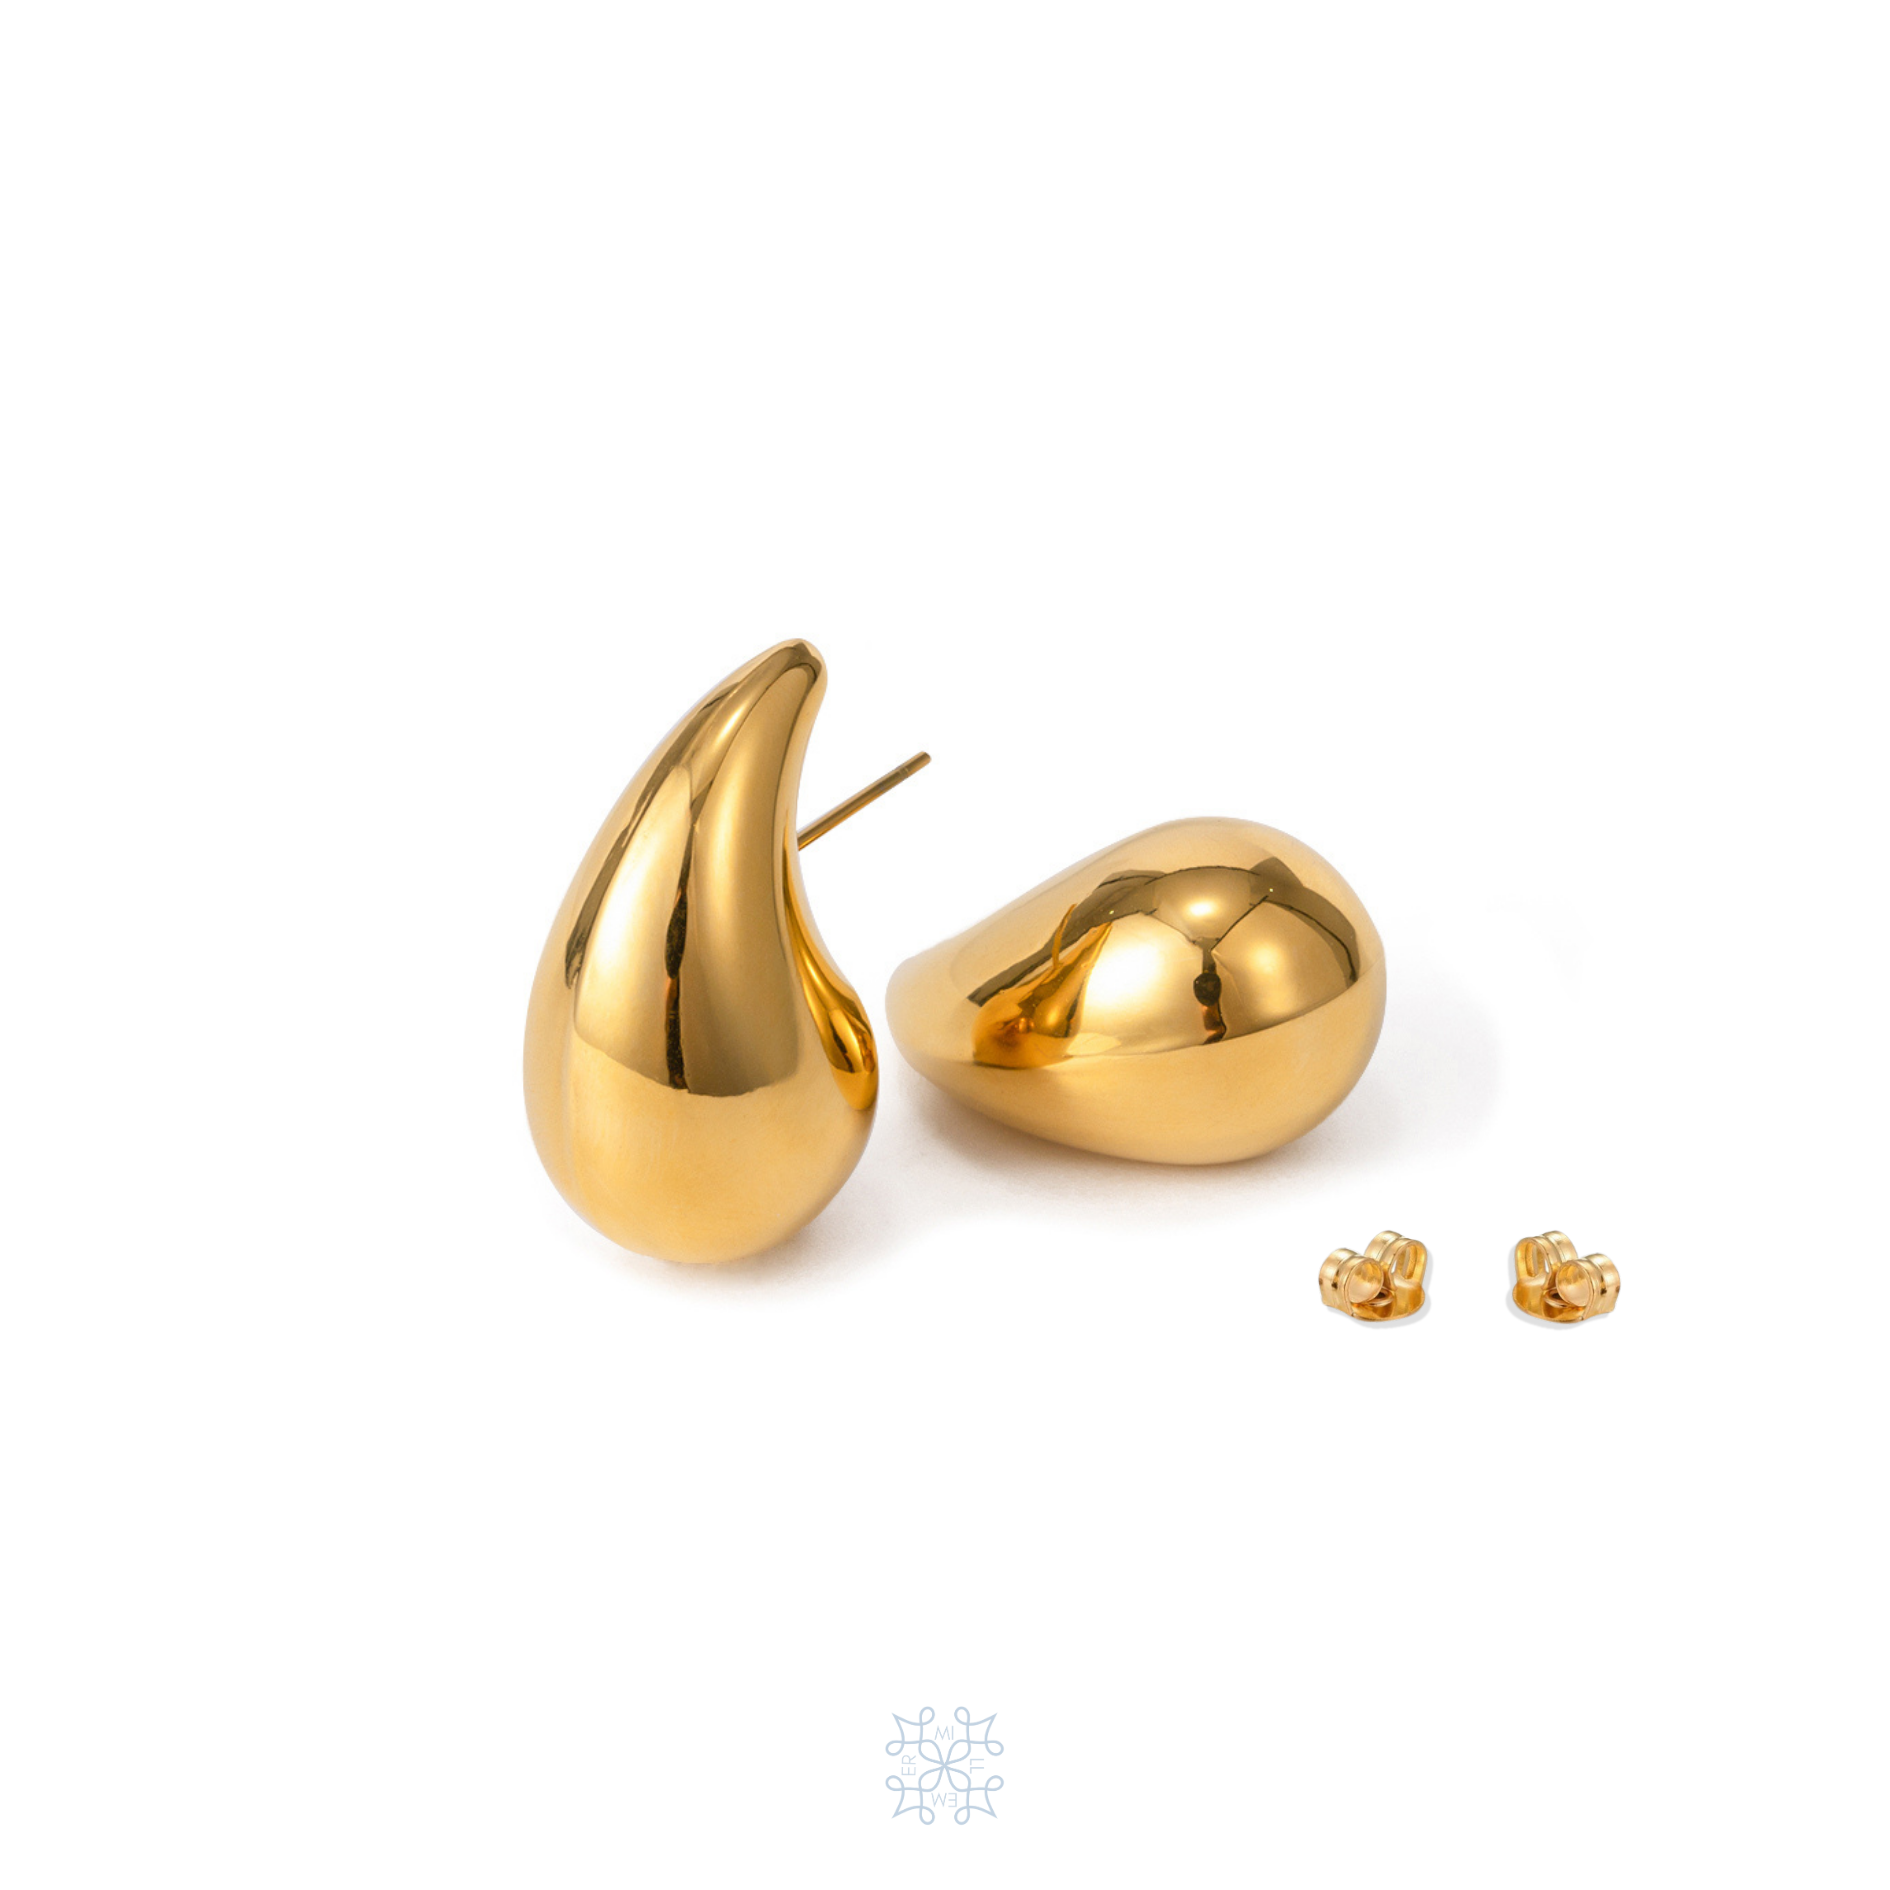 WATERDROP Shaped gold earrings, Pebble Earrings,